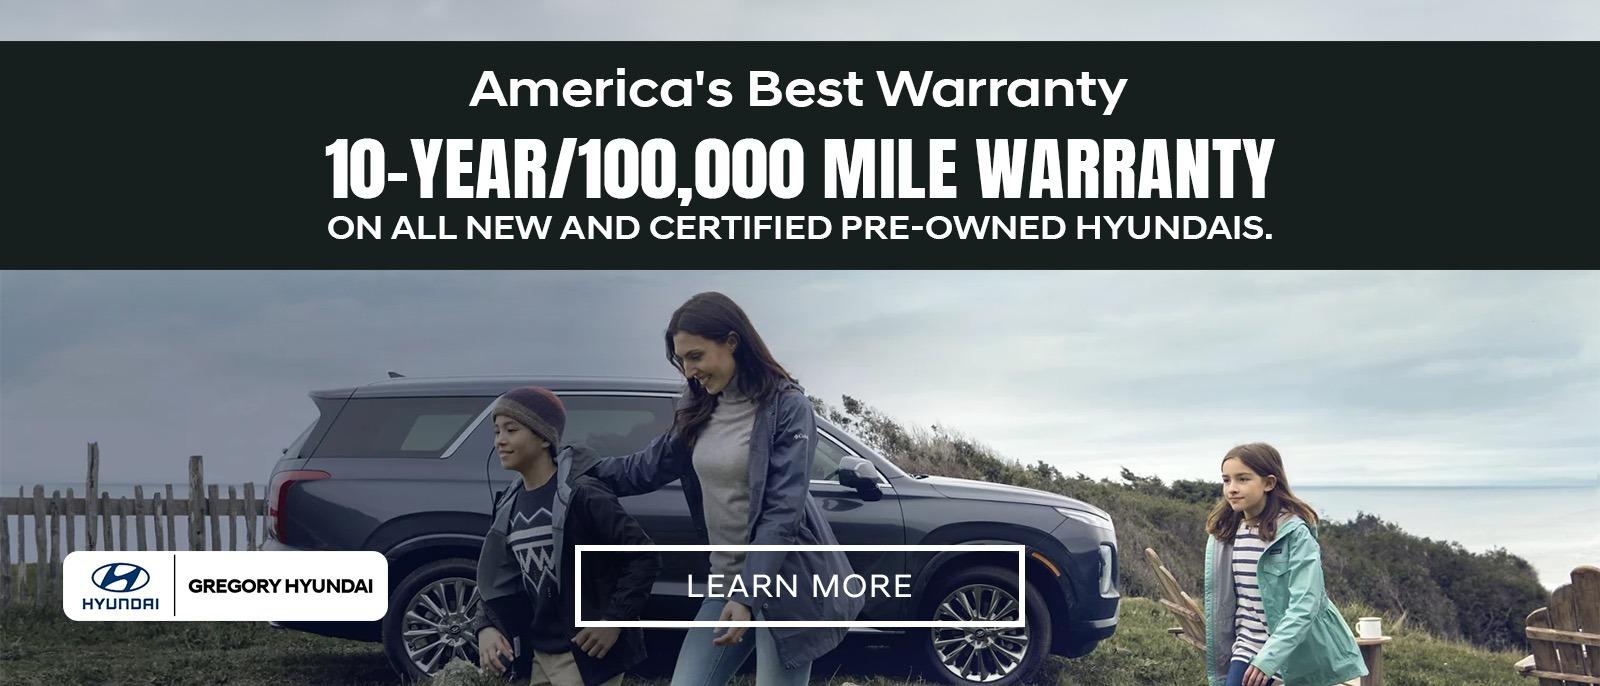 America's Best Warranty